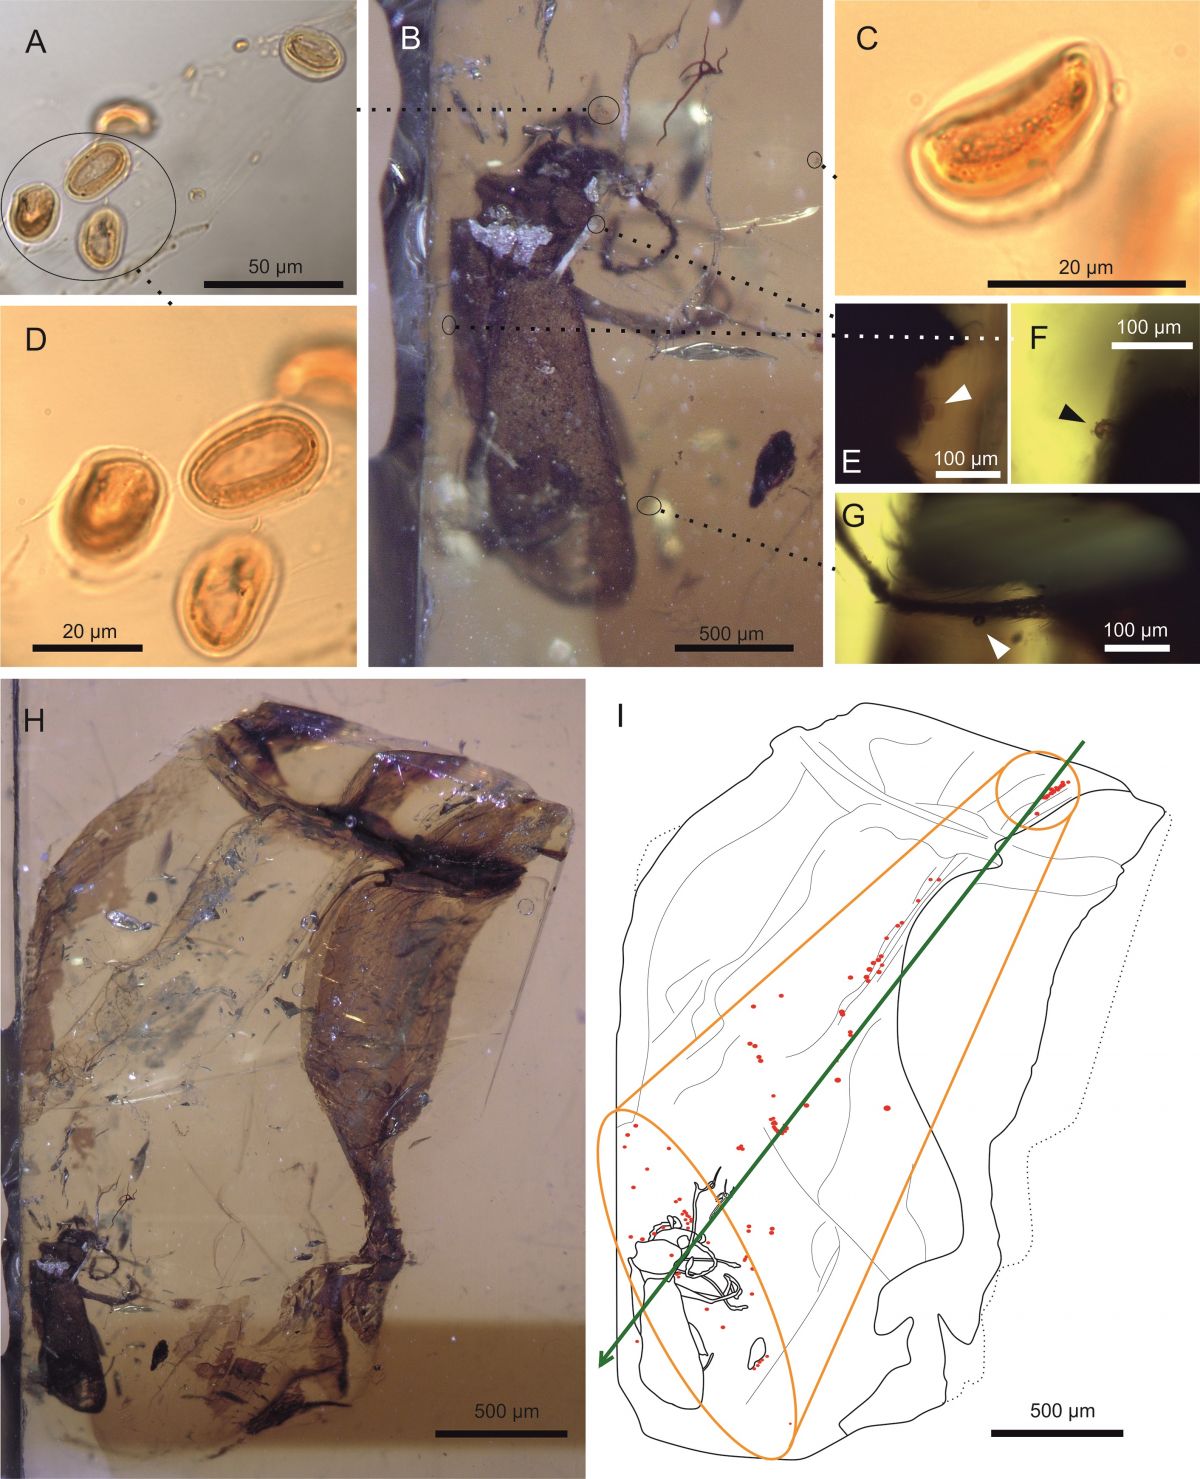 Die Bildausschnitte A ,D und C zeigen die Pollen im Bernstein in der Großaufnahme. B und H den Käfer Darwinylus marcosi. Die Bildauschnitte E bis G zeigen einige Körperteile des Käfers, an denen Pollen haften geblieben sind: die Mundkwerzeuge (E), Flügel (F) und  Hinterbeine (G). Das Schaubild (I) zeigt den 